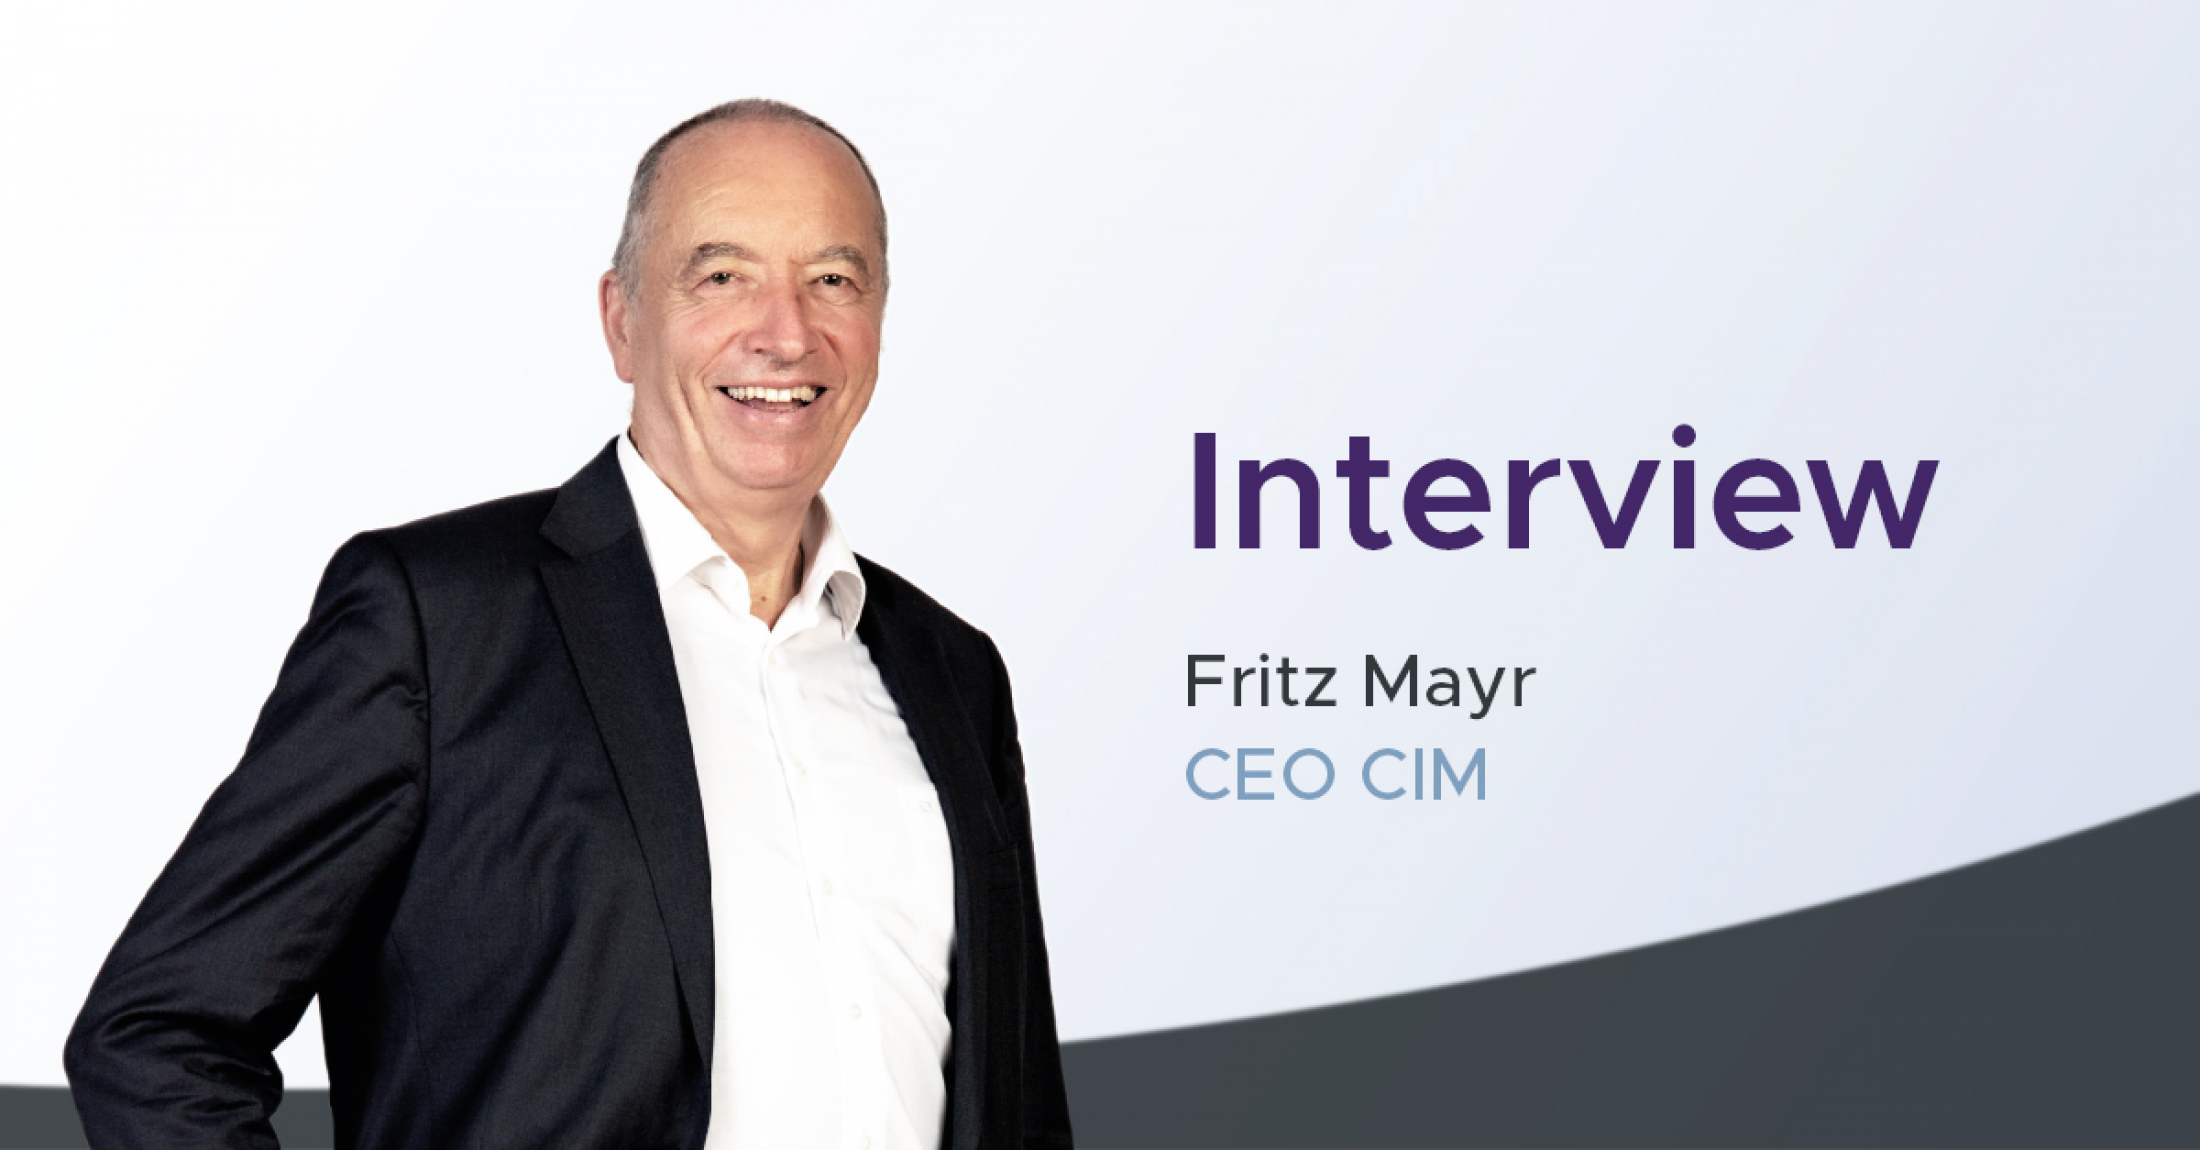 Interview Teil 1 - Fritz Mayr über die Trends in der Intralogistik